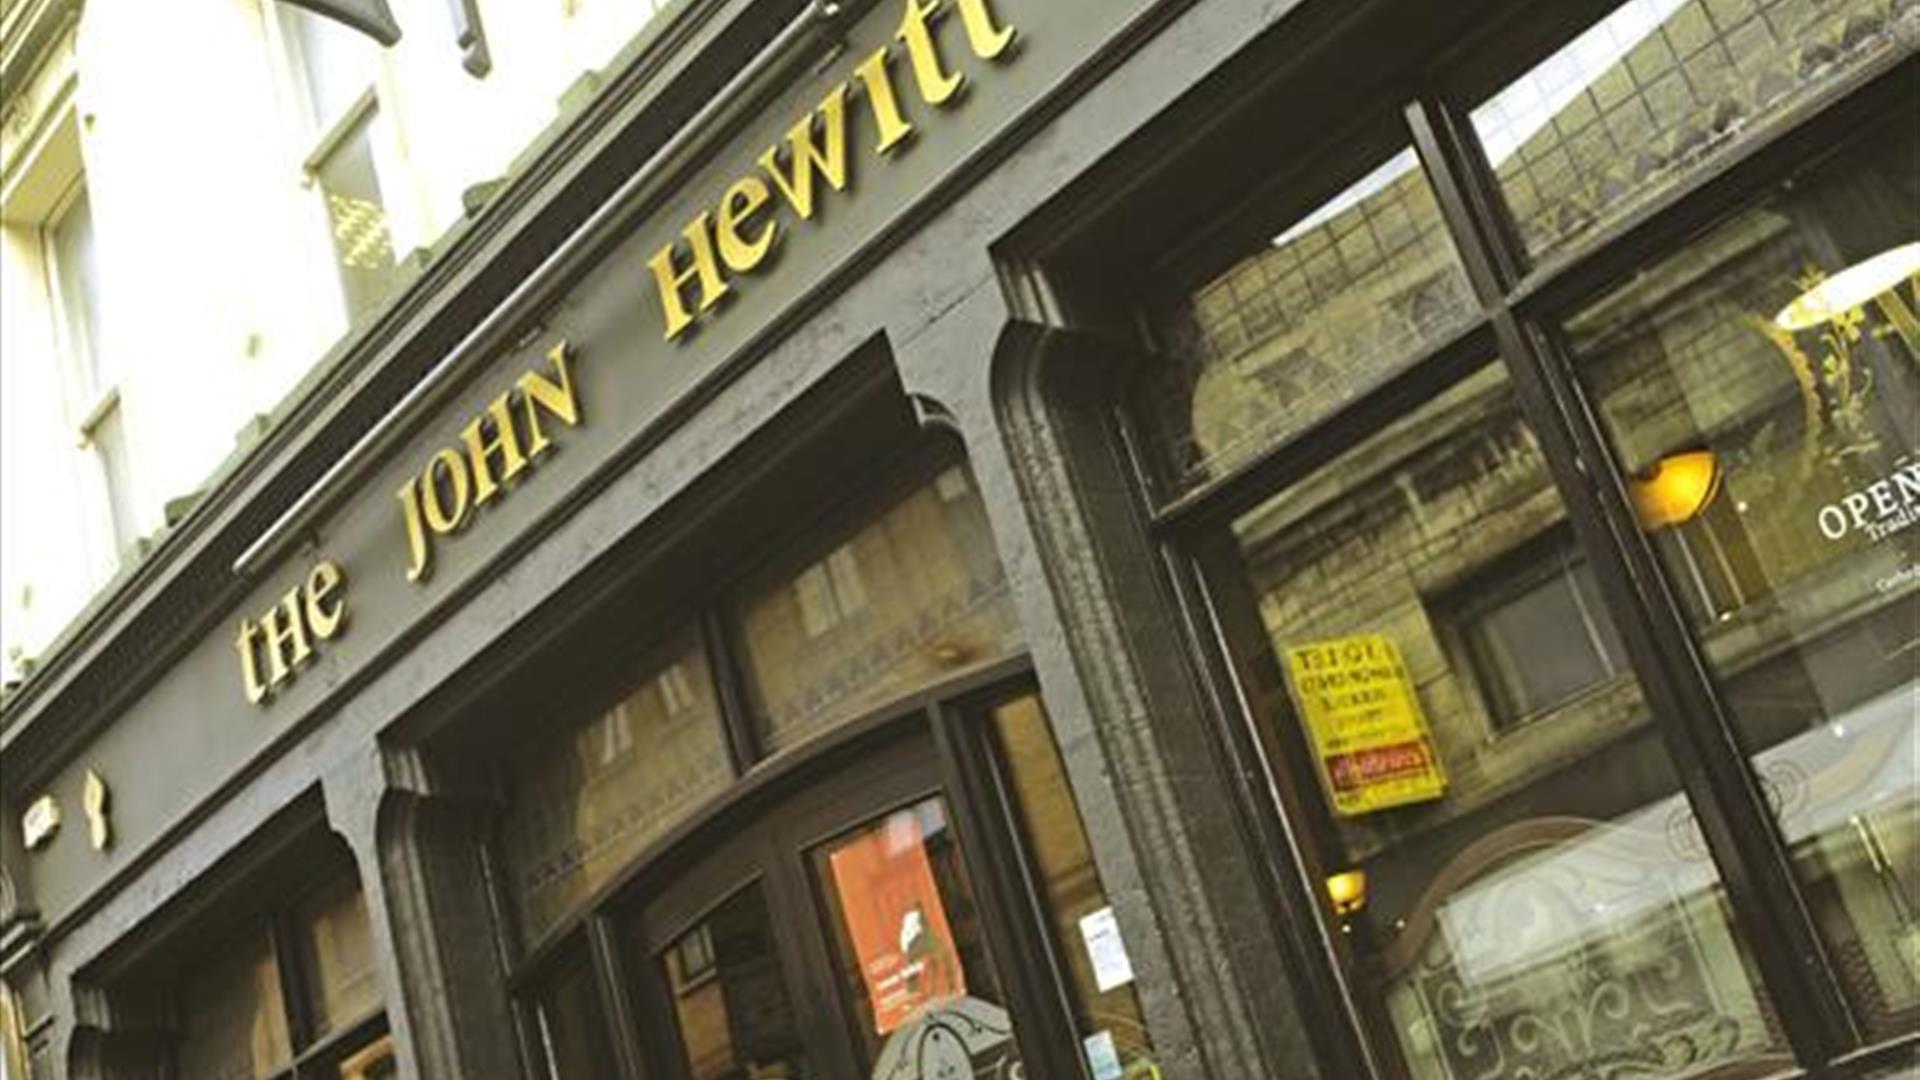 The John Hewitt Bar & Restaurant